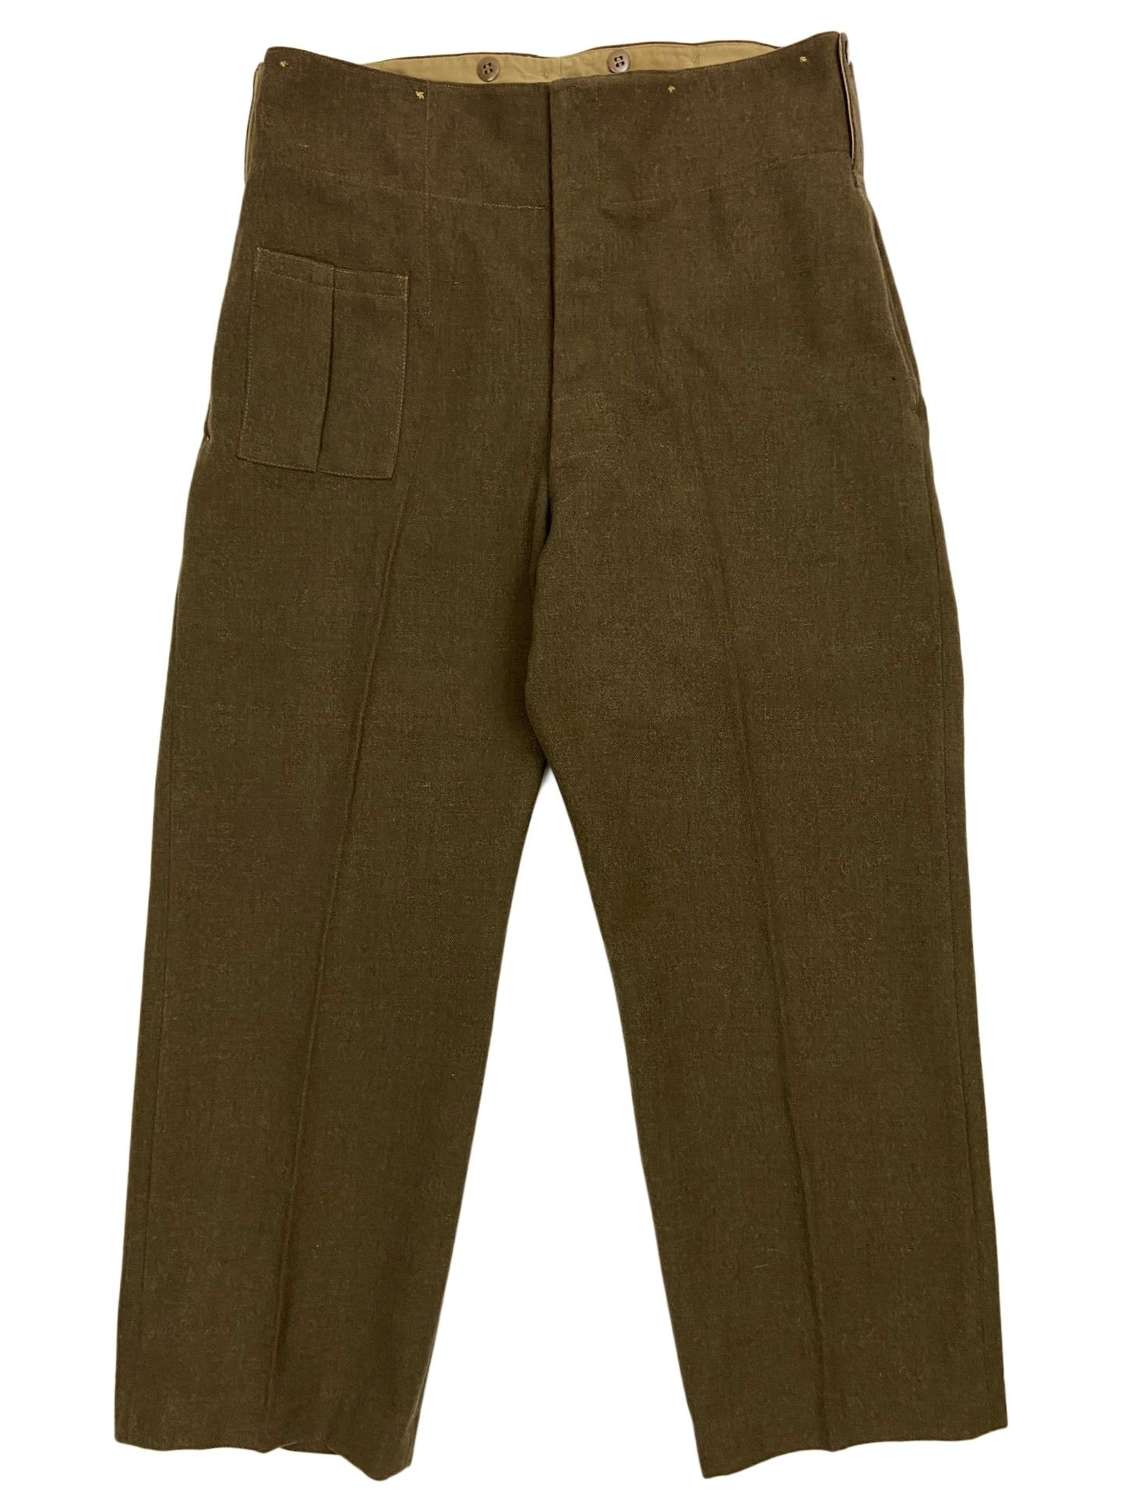 Original 1943 Dated New Zealand made Battledress Trousers